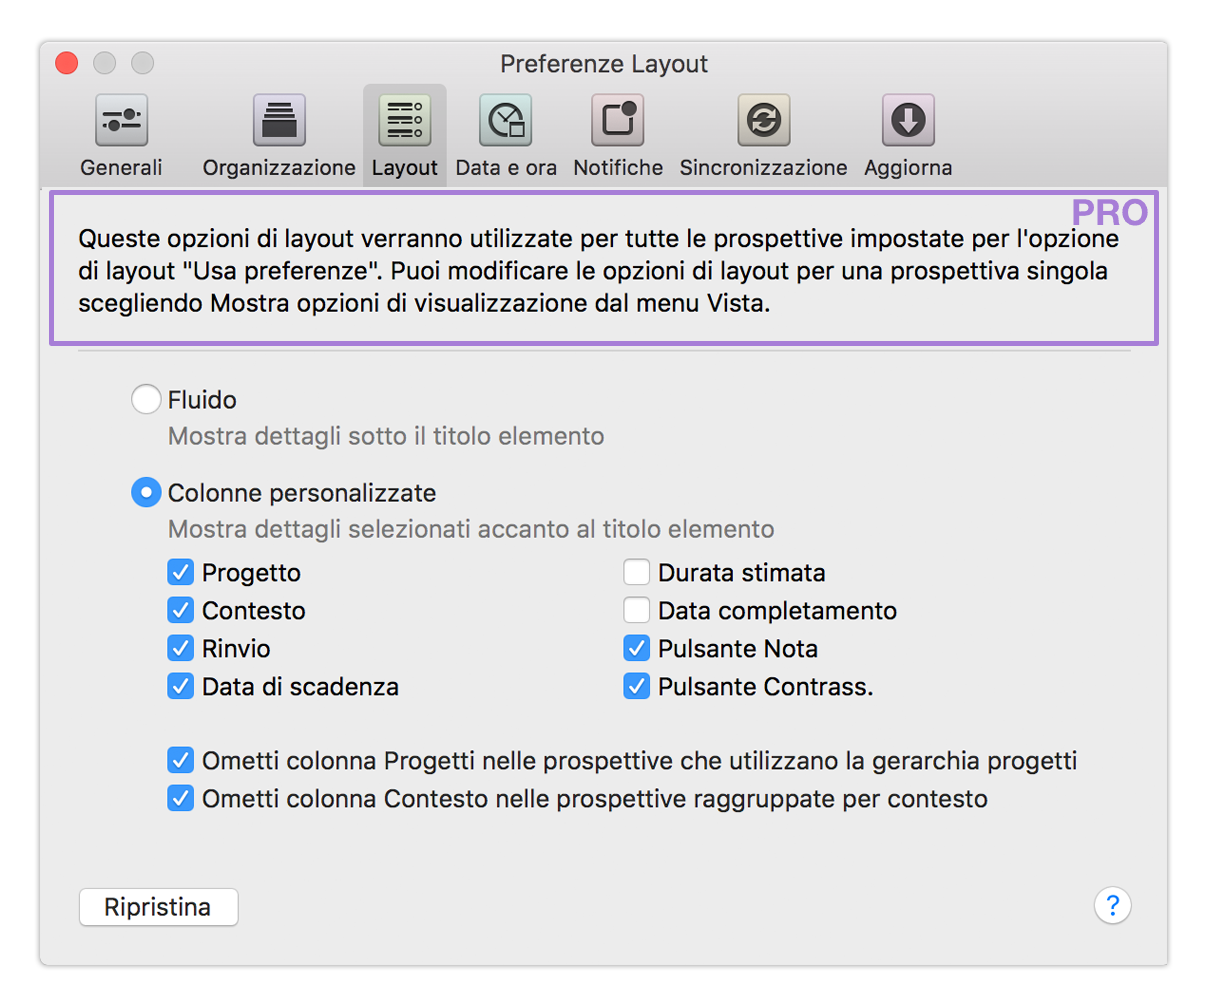 Preferenze Layout di OmniFocus 2 per Mac.